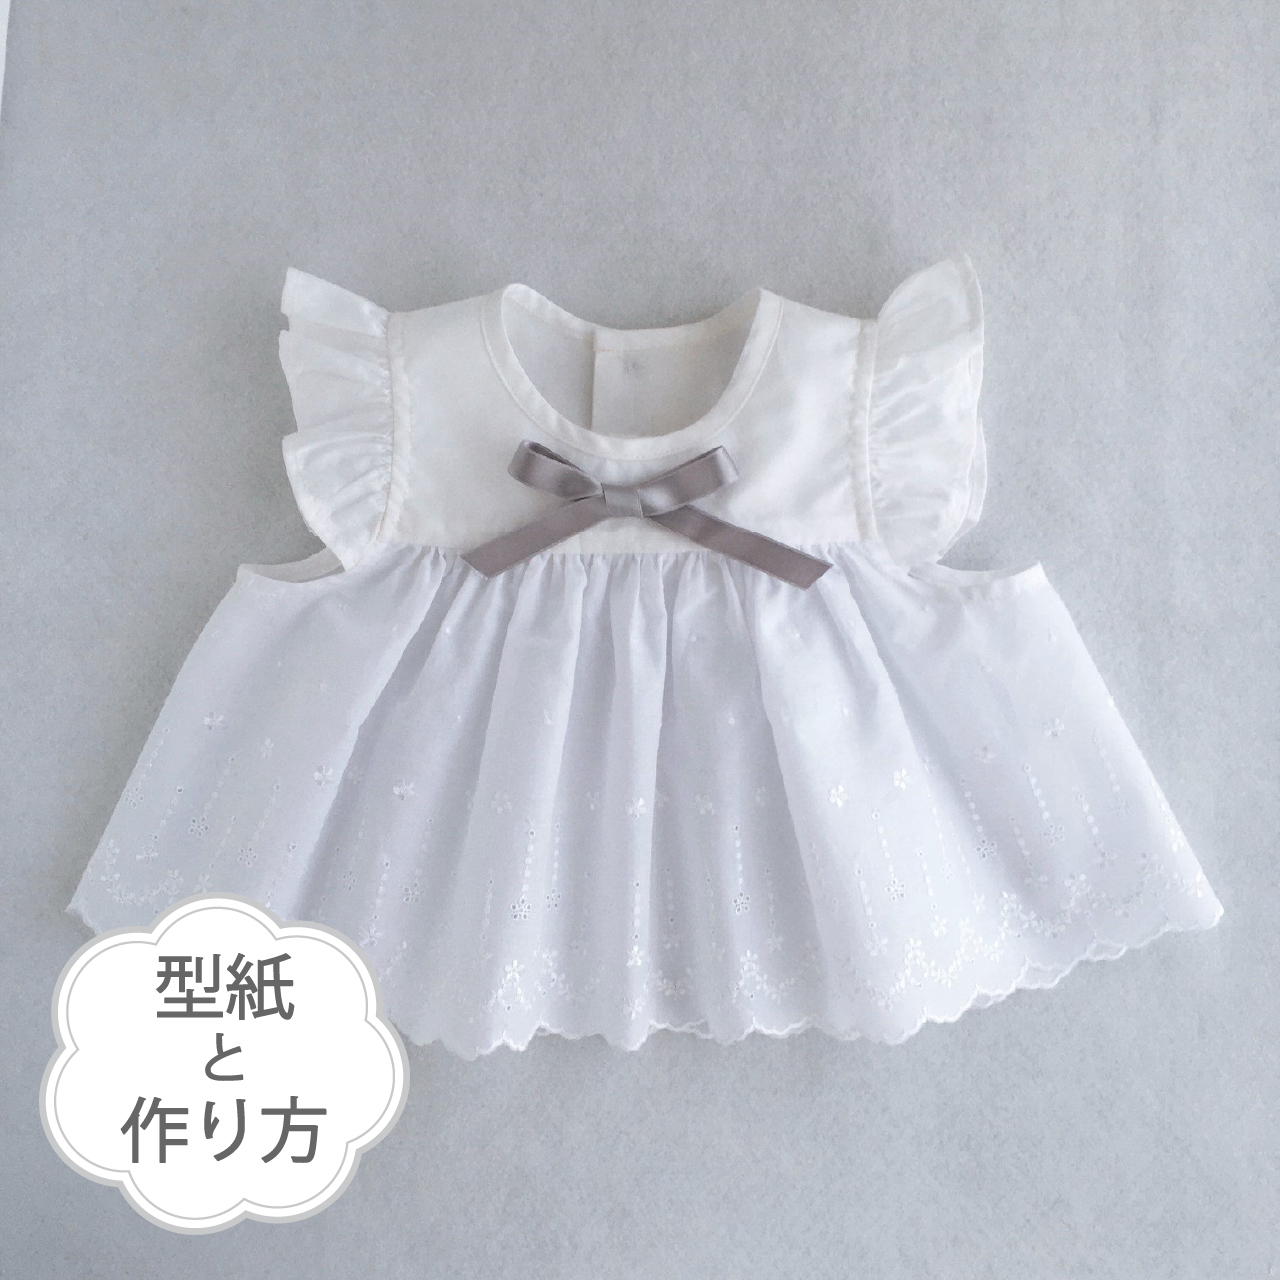 エプロンドレス 型紙と作り方のセット We 09ba 子供服の型紙ショップ Tsukuro ツクロ